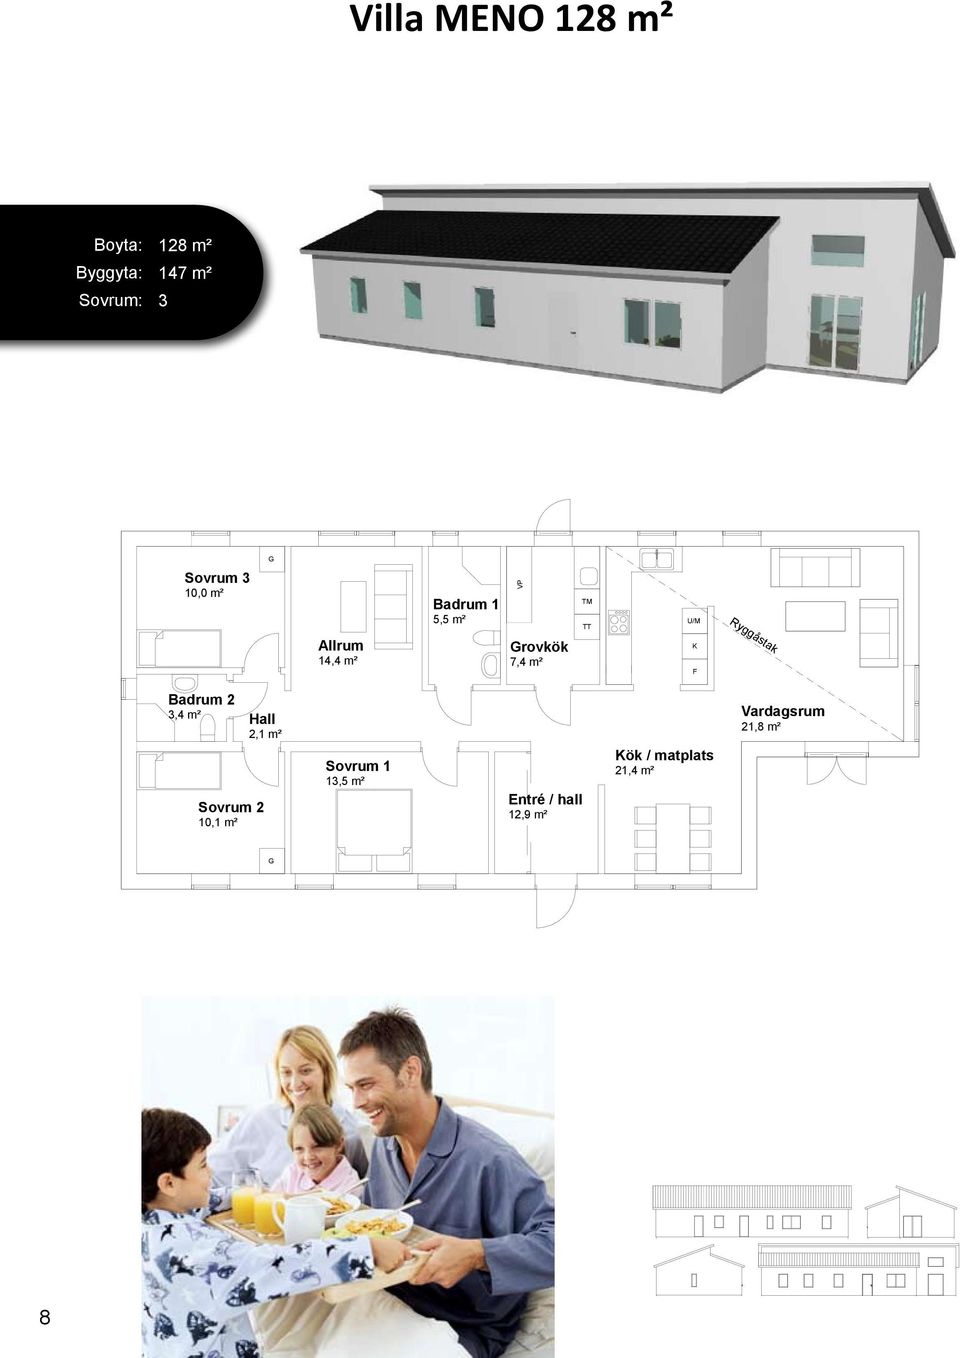 14,4 m² 13,5 m² rovkök 7,4 m² Entré / hall 12,9 m² ök /